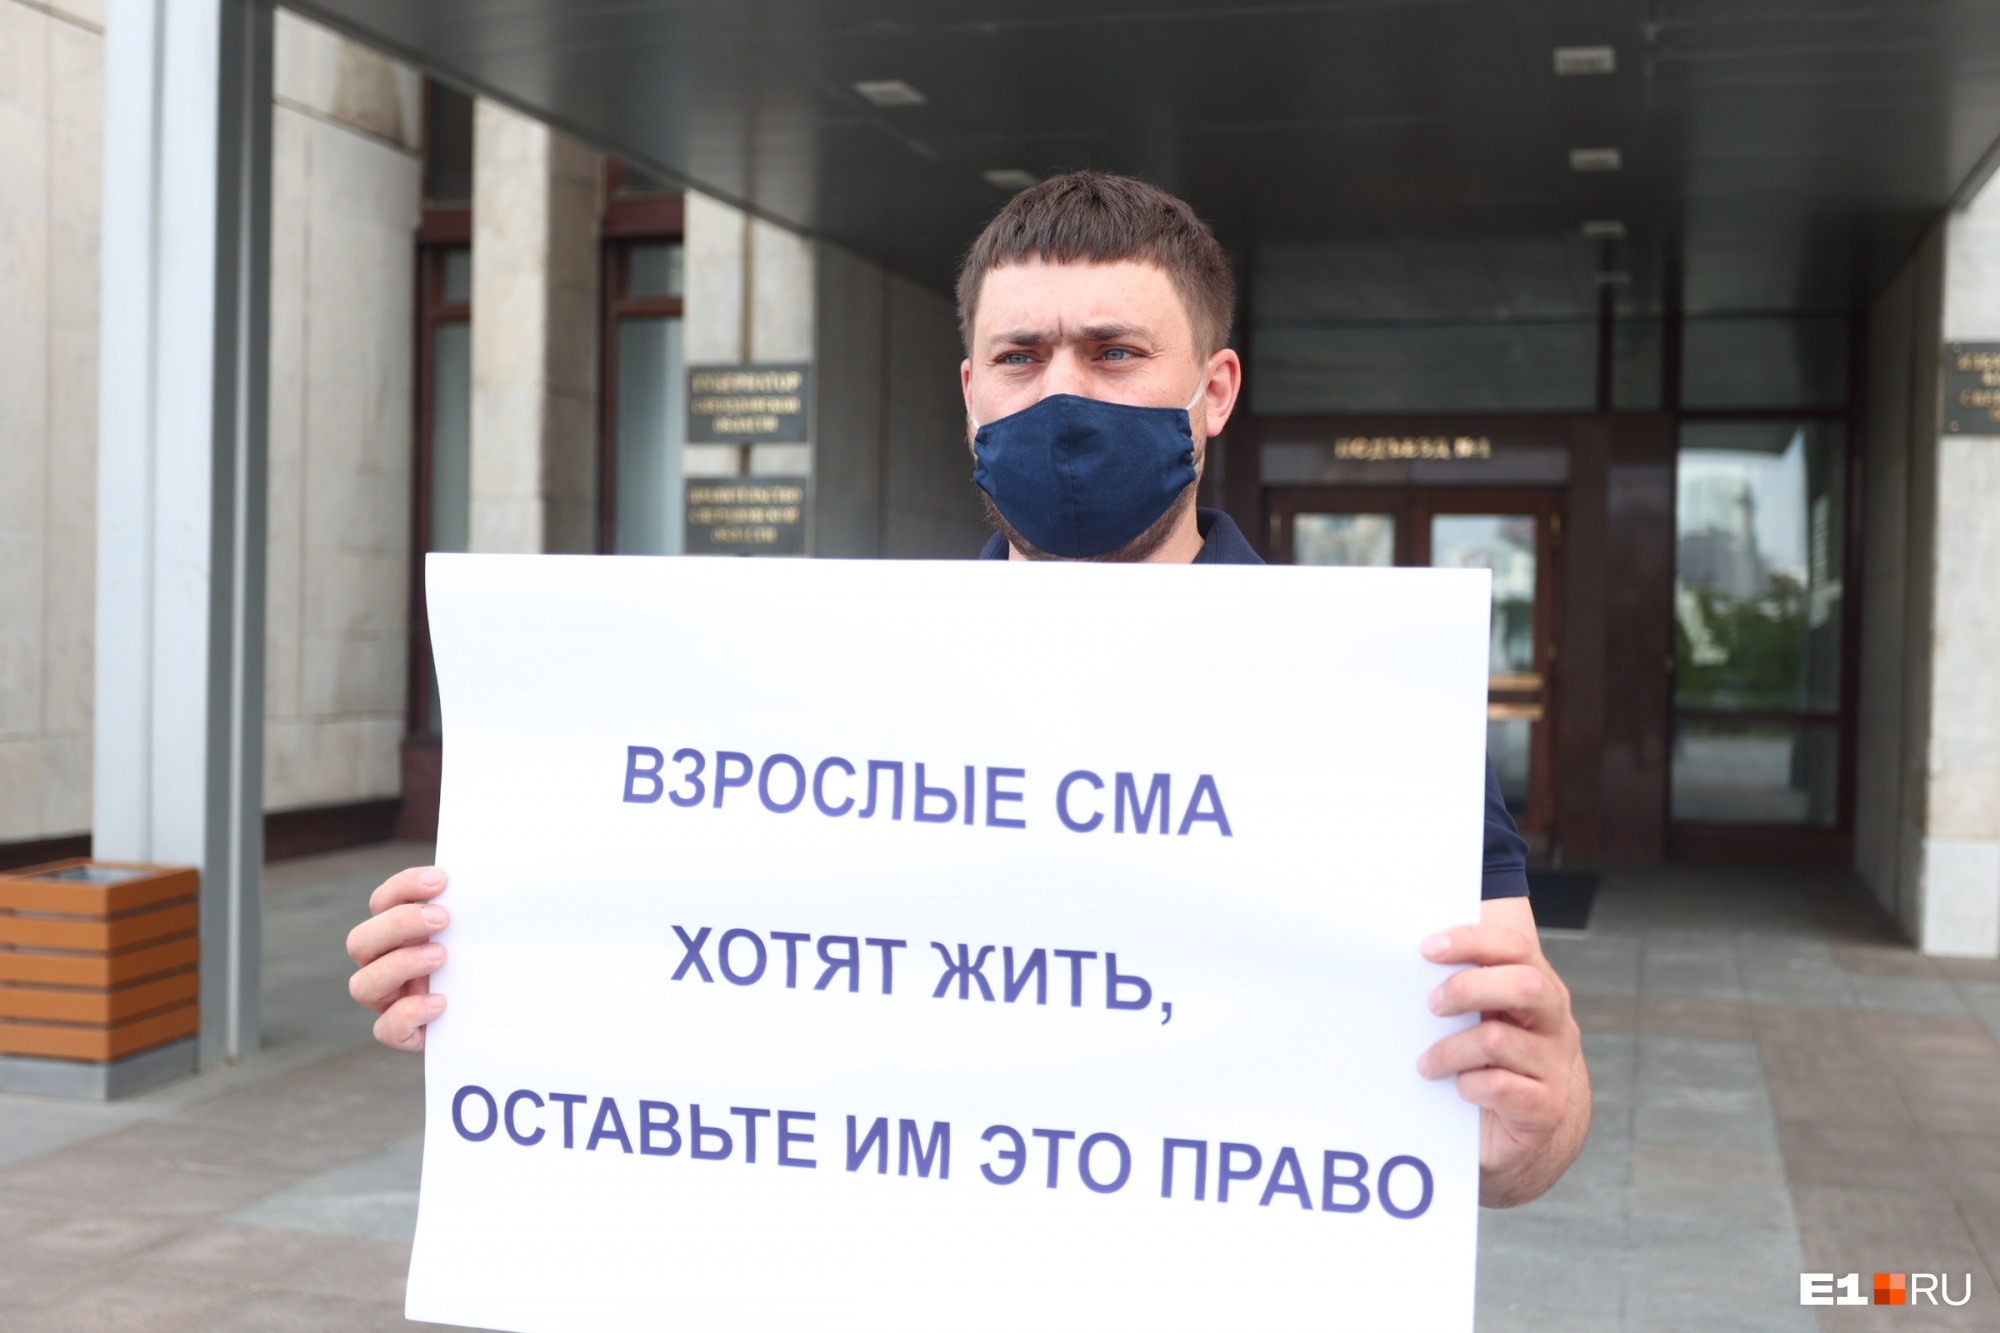 «Люди бы умерли, и не было никаких вопросов». В Екатеринбурге устроили пикет в защиту взрослых со СМА